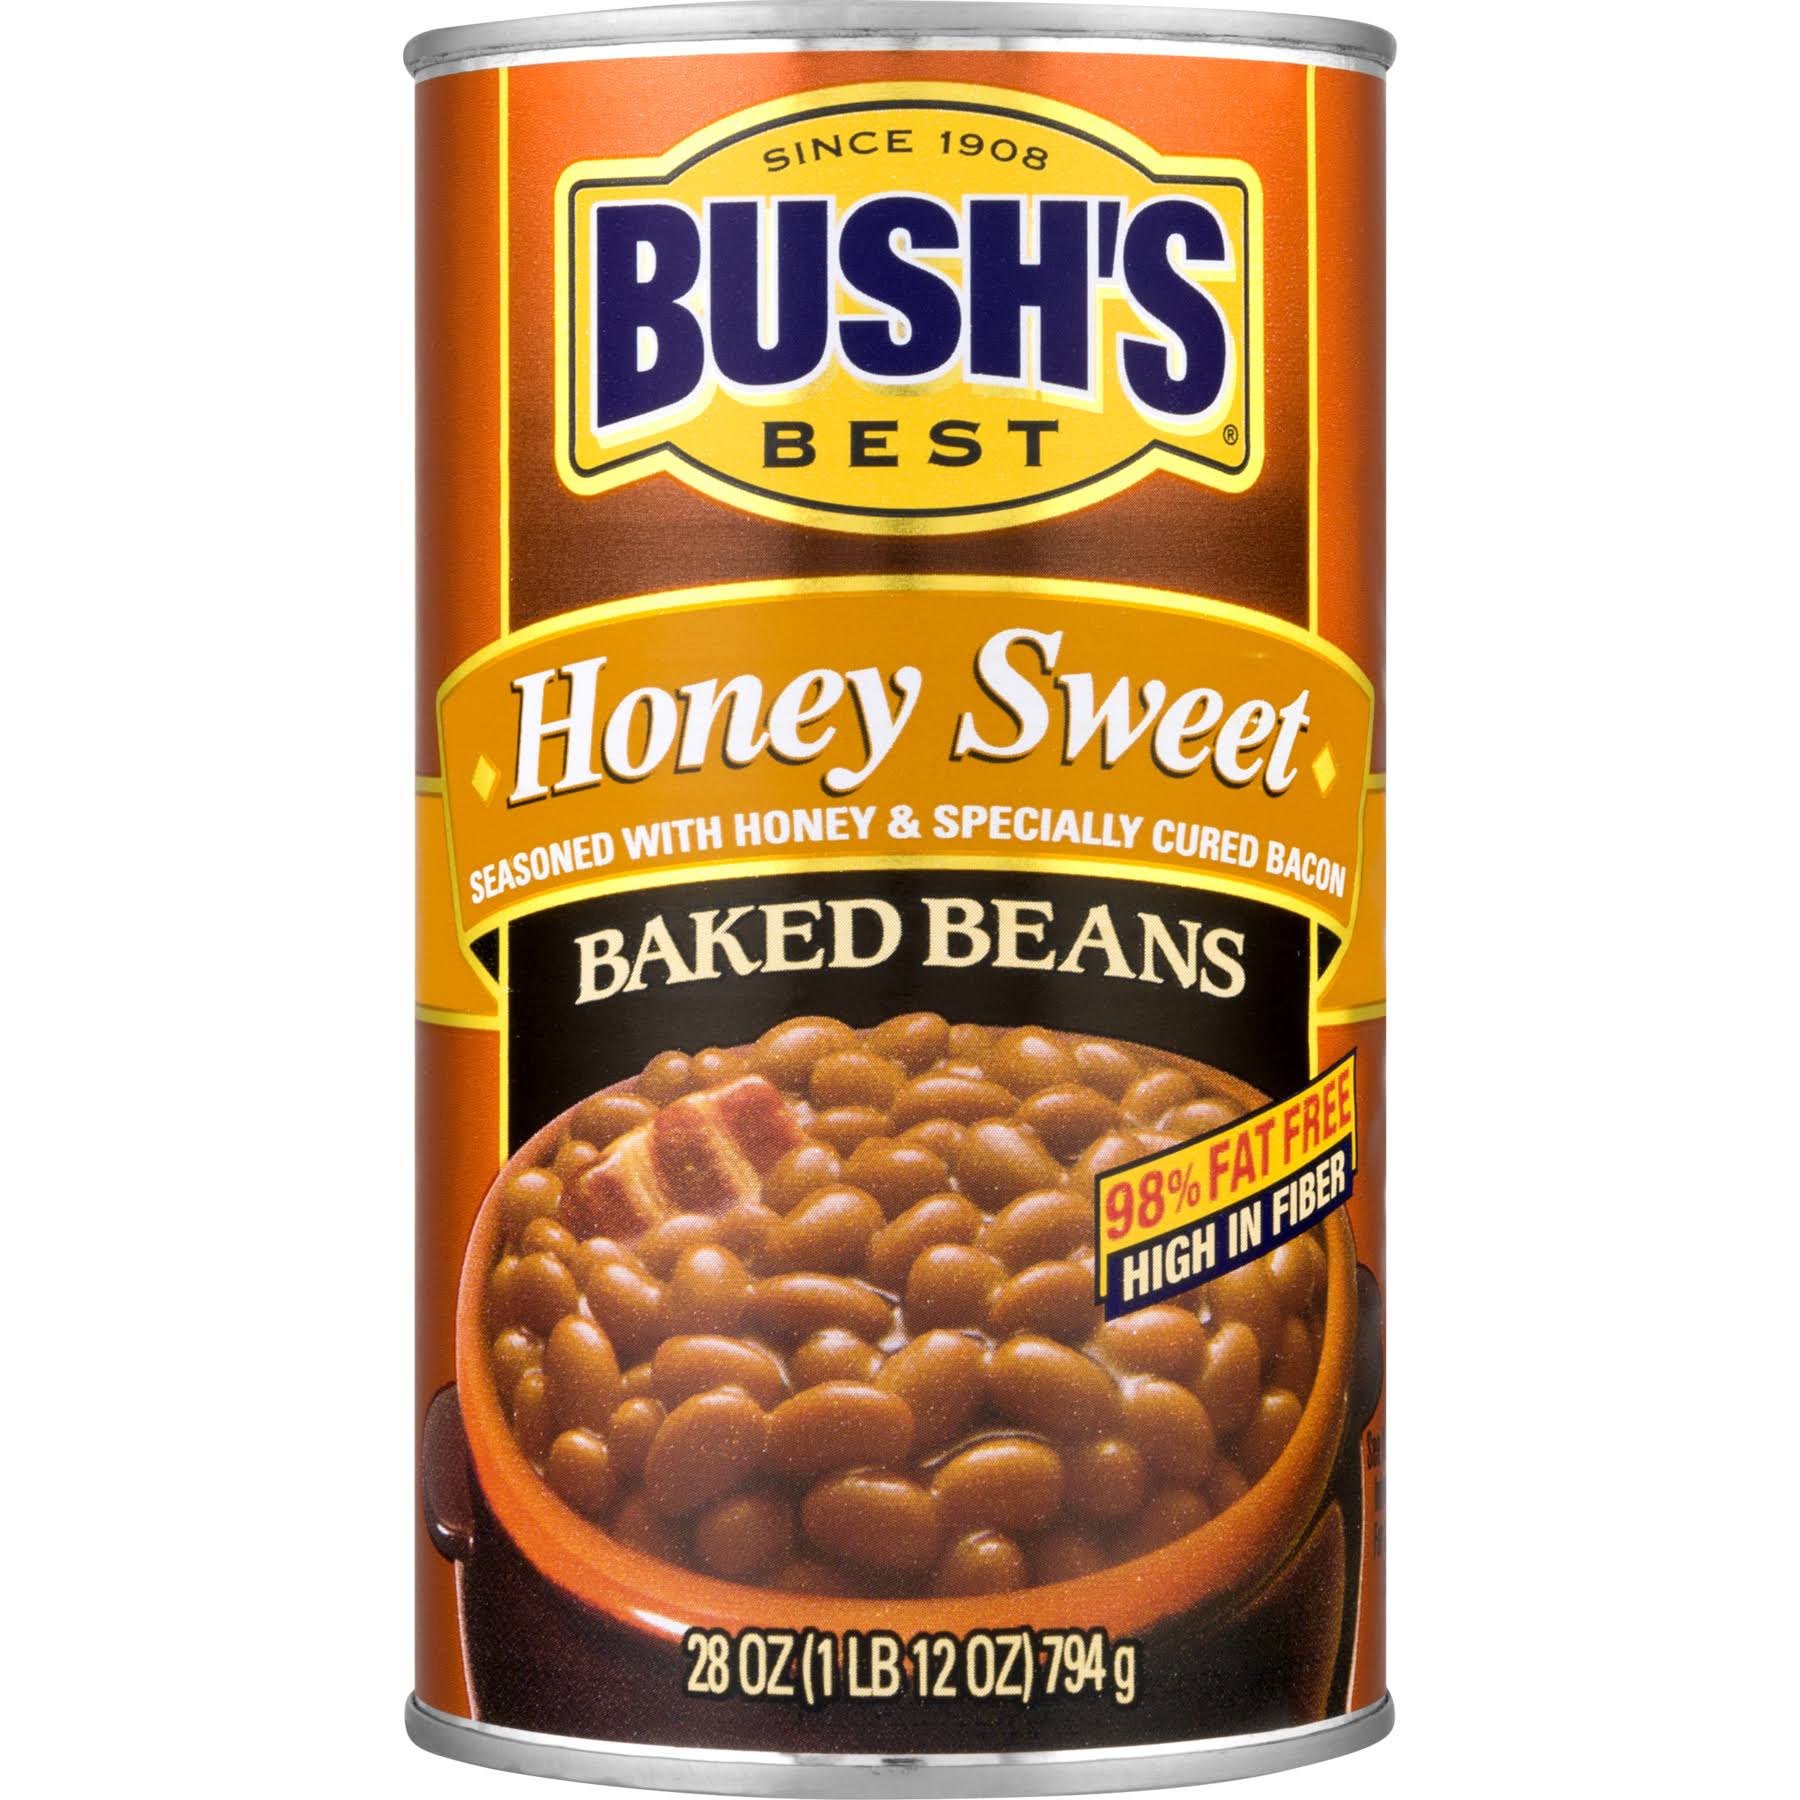 Bush's Best Baked Beans - Honey, 28 oz